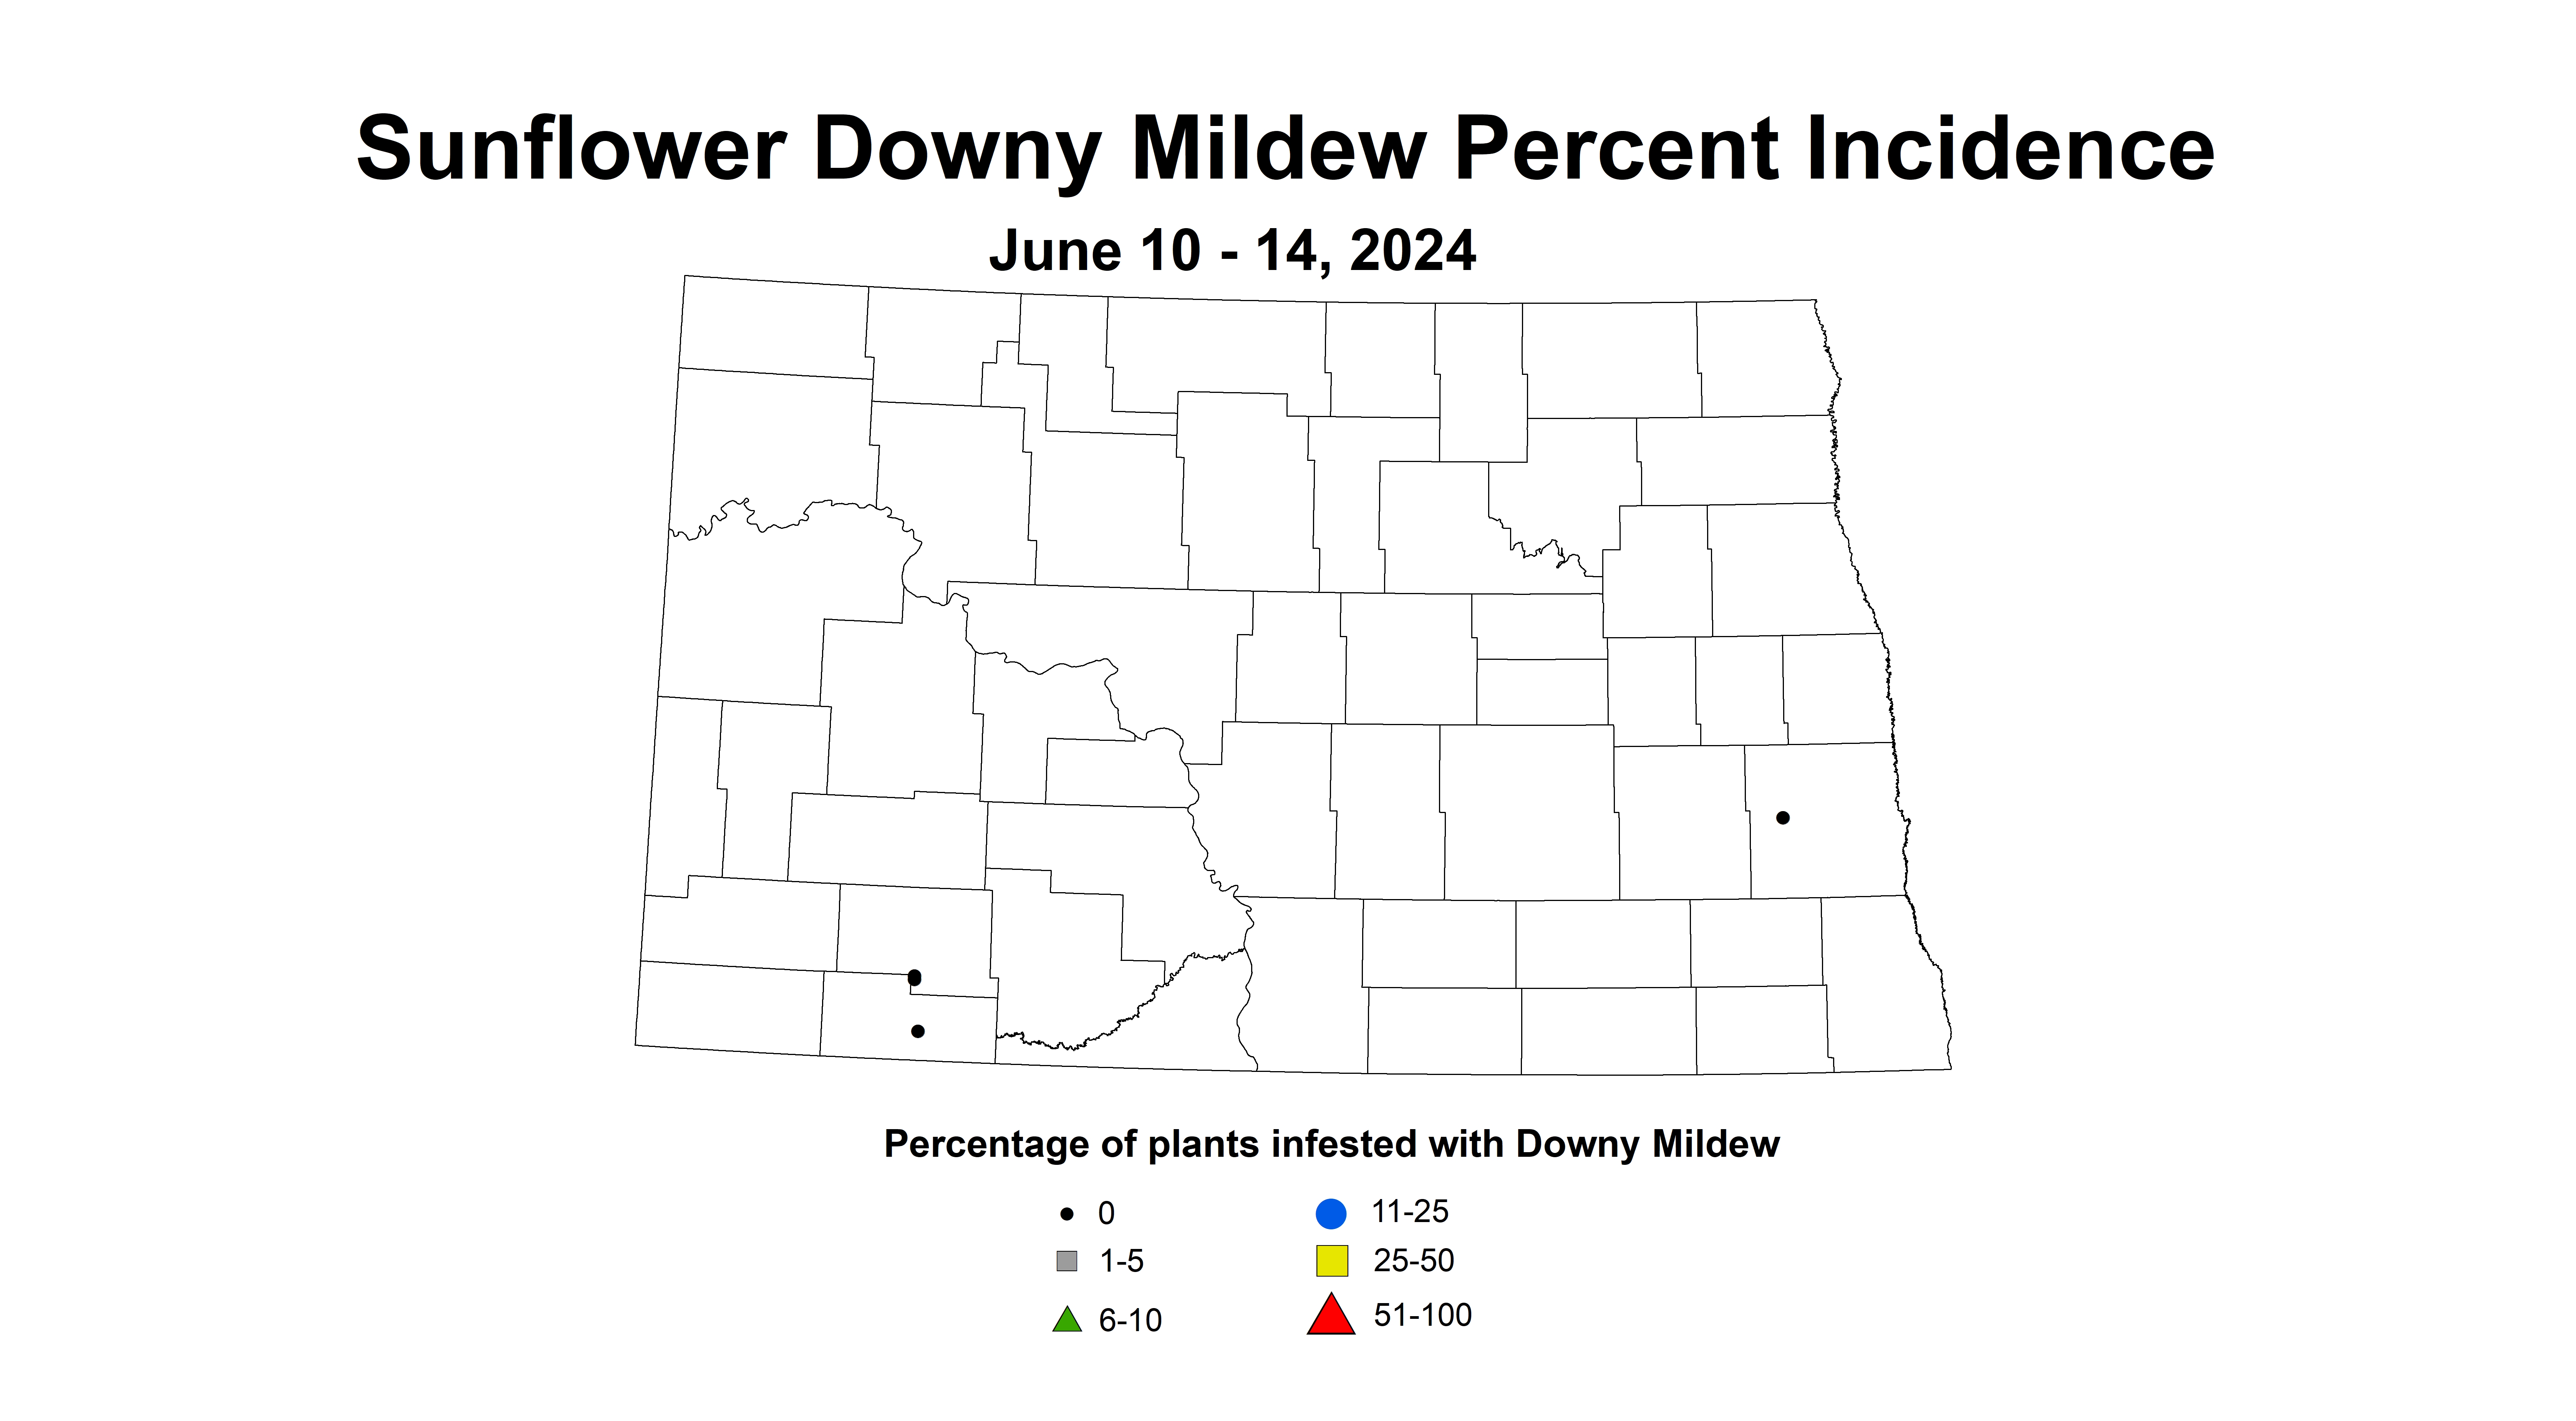 sunflower downy mildew June 10-14 2024 corrected